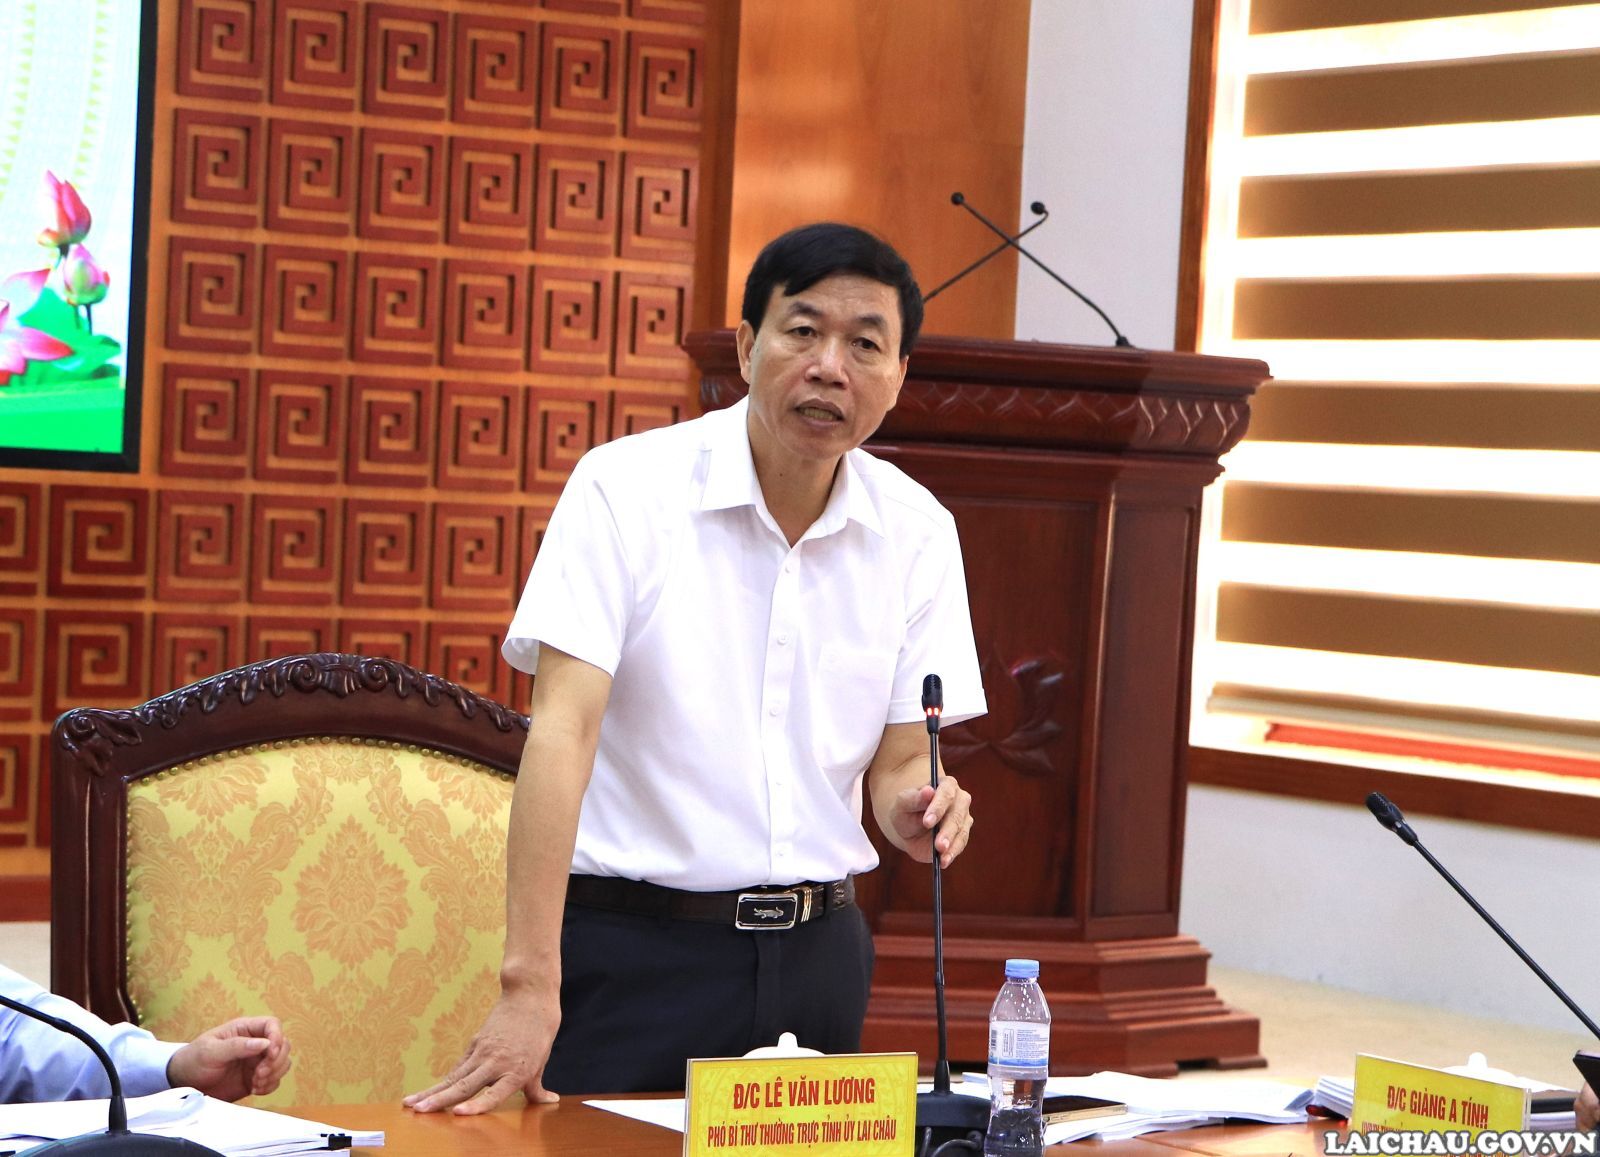 Đồng chí Lê Văn Lương - Phó Bí thư Thường trực Tỉnh ủy phát biểu chỉ đạo tại cuộc họp.